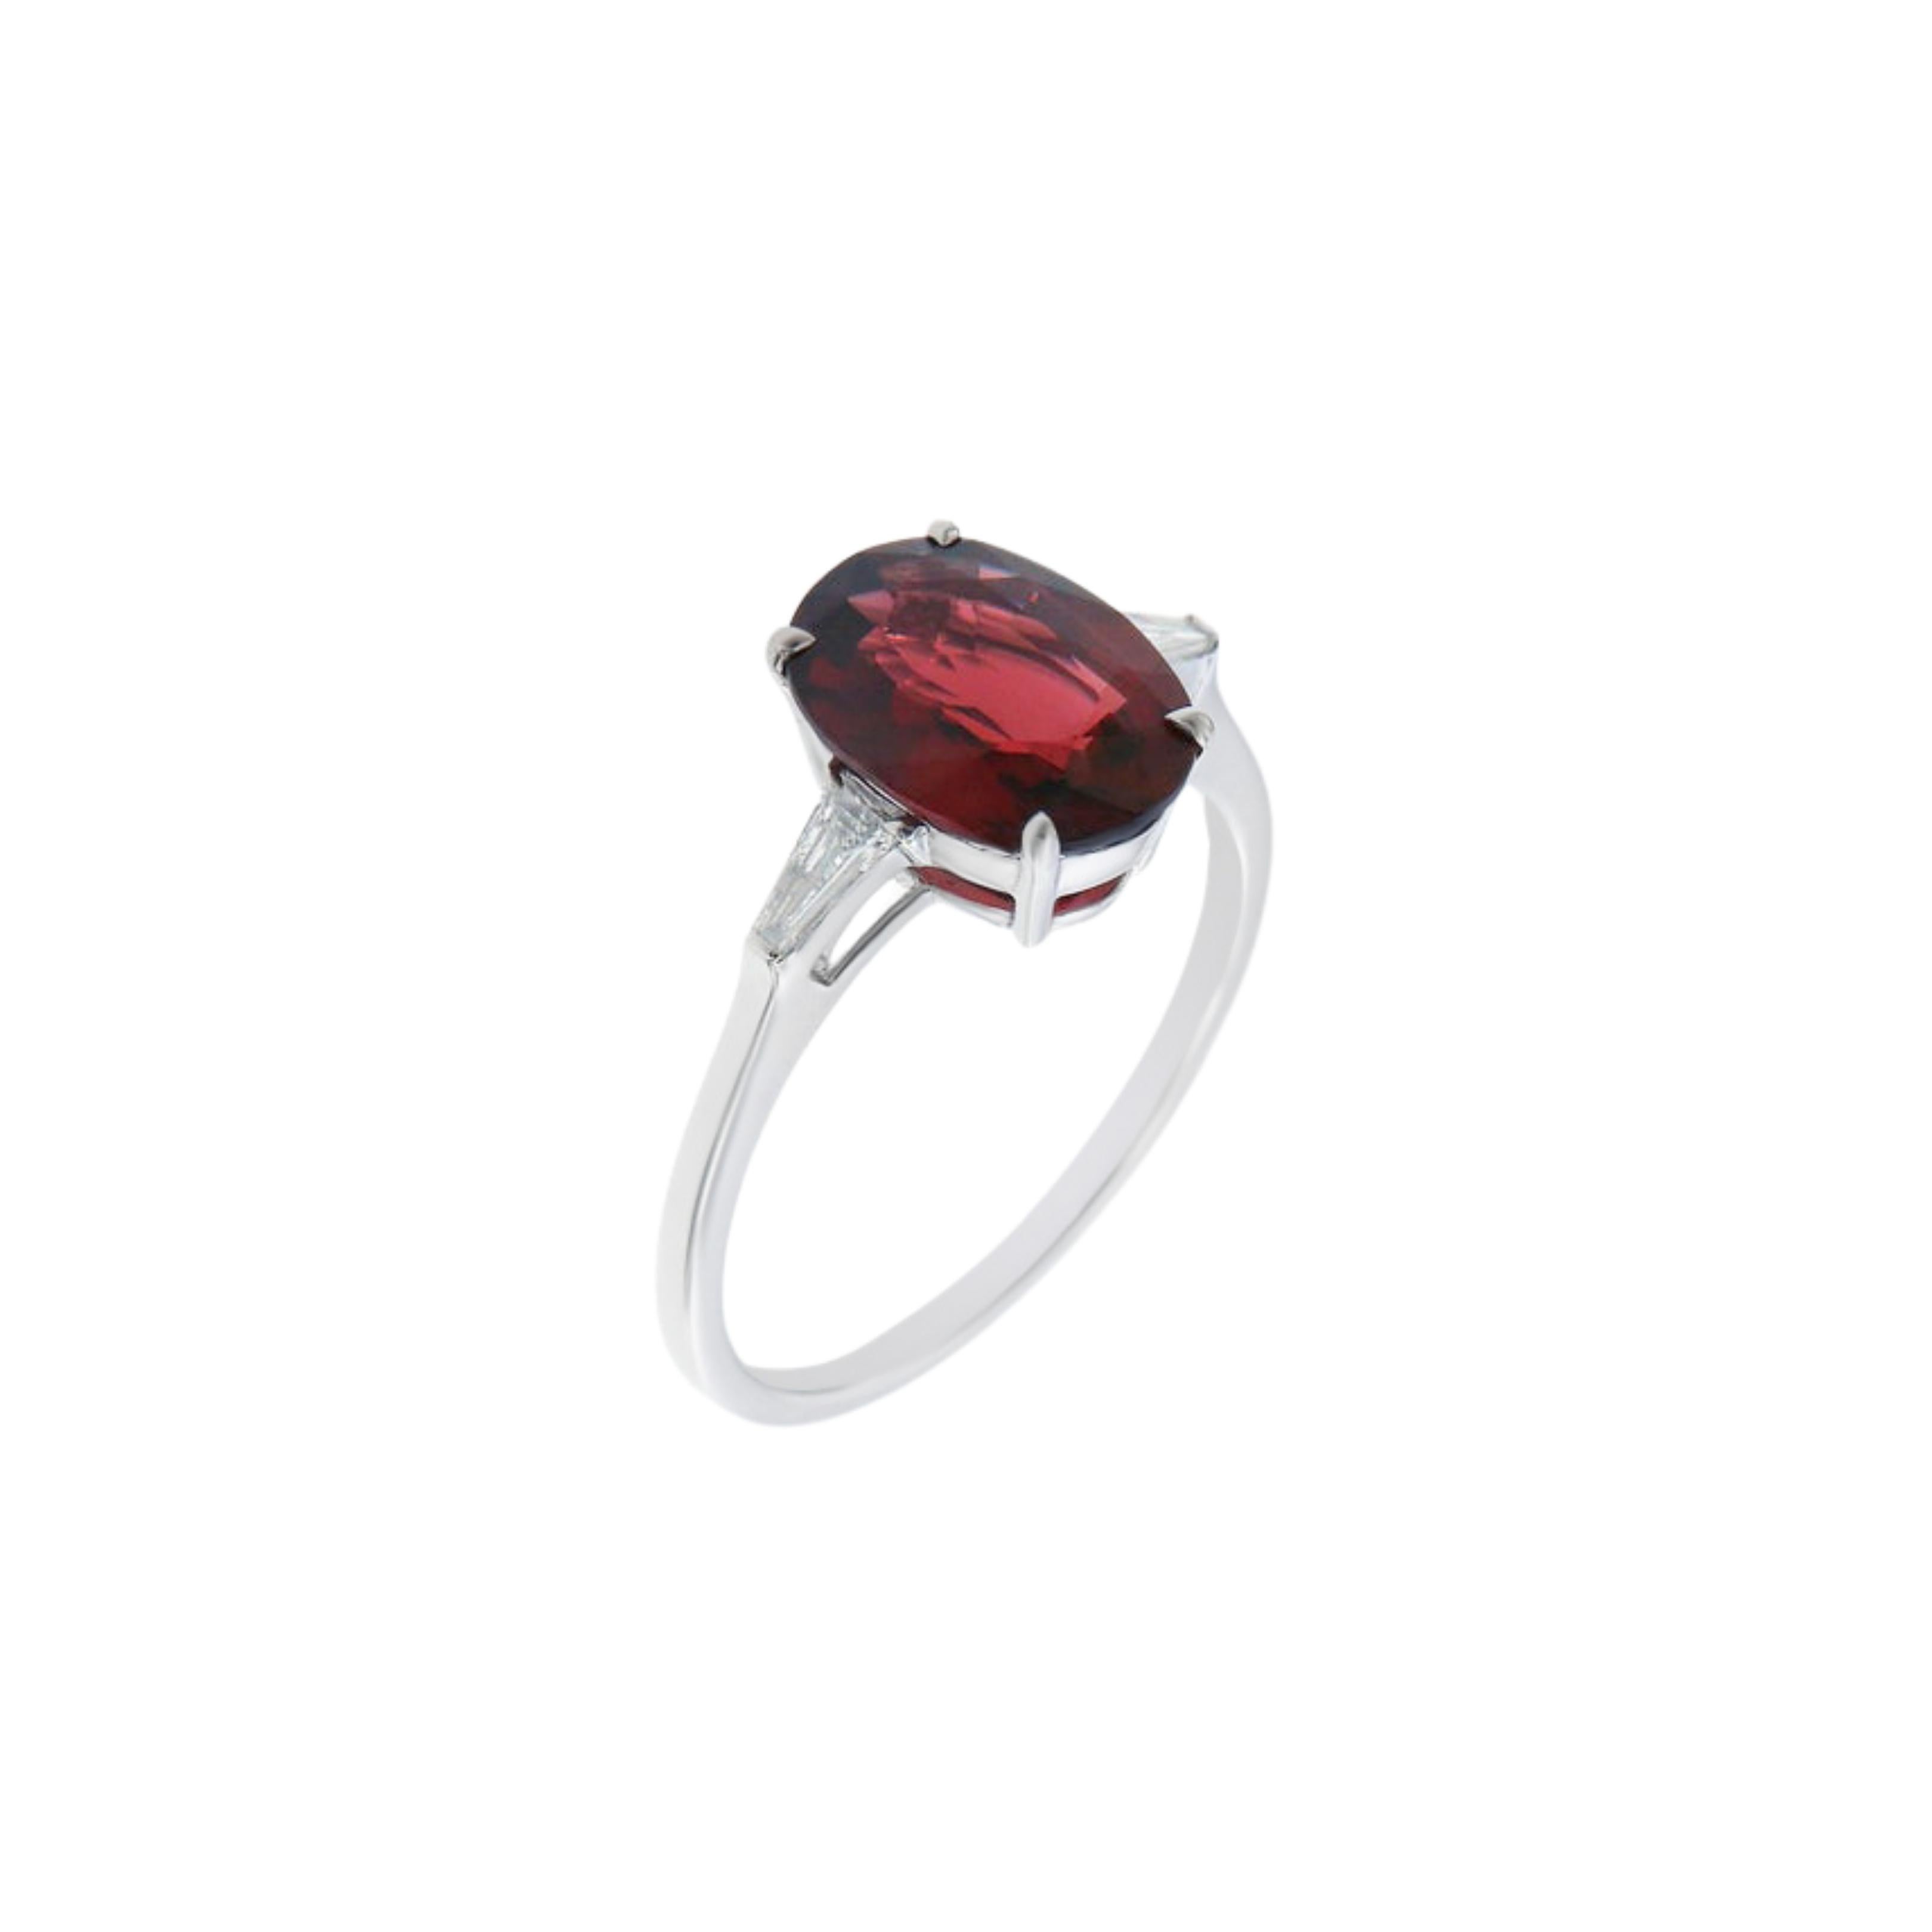 Dieser schöne ovale rote Spinell ist ein natürlicher, nicht erhitzter Stein von 2,48ct. Wunderschön besetzt mit spitz zulaufenden Baguette-Diamanten in G VVS-Qualität und gefasst in hochglanzpoliertem 18 Karat Weißgold. 

Ringgröße
EU 52 
USA